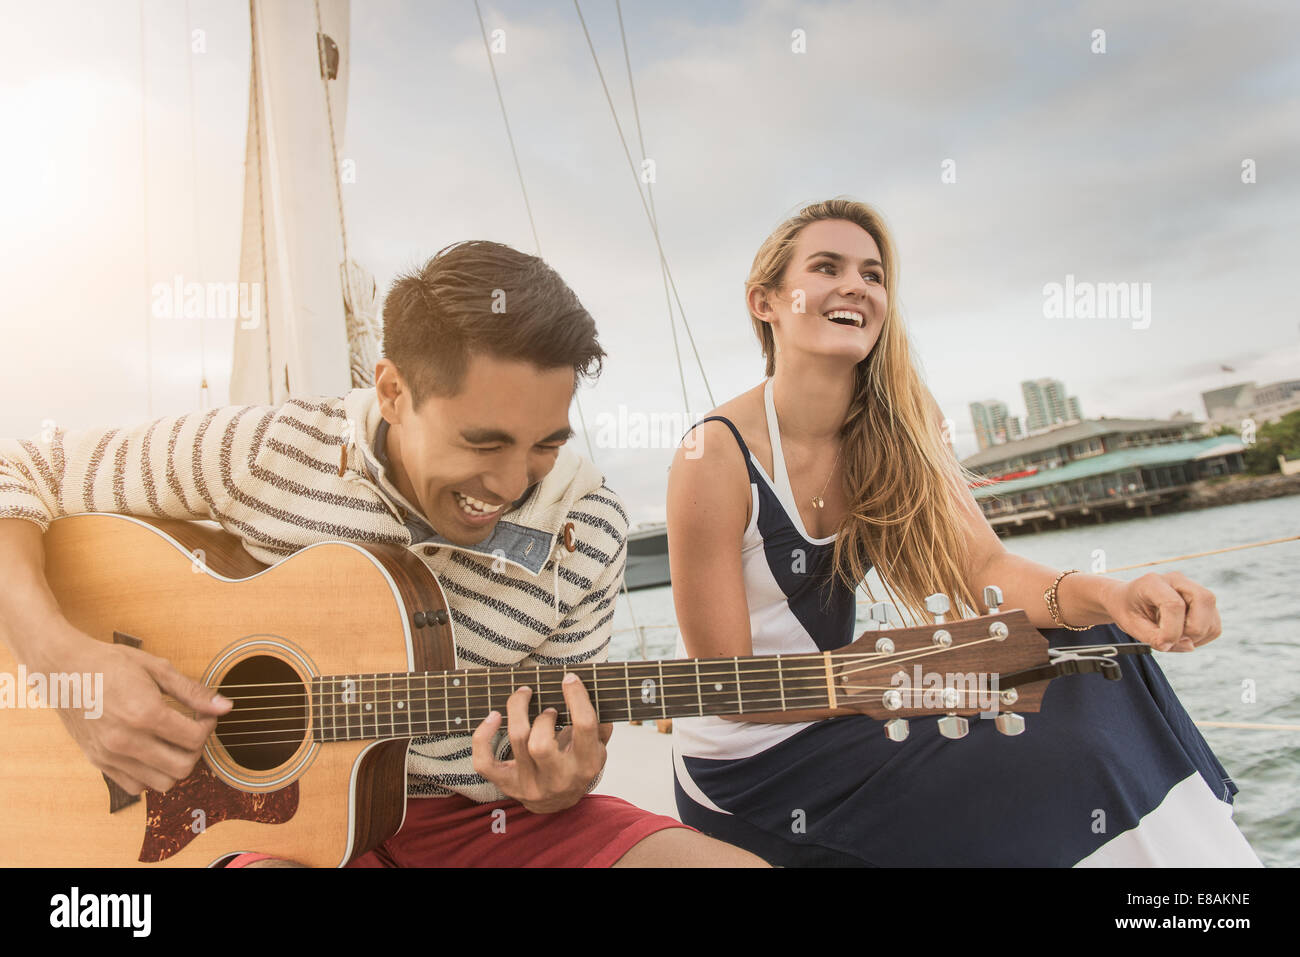 Jeune couple sur bateau à voile, man playing guitar Banque D'Images